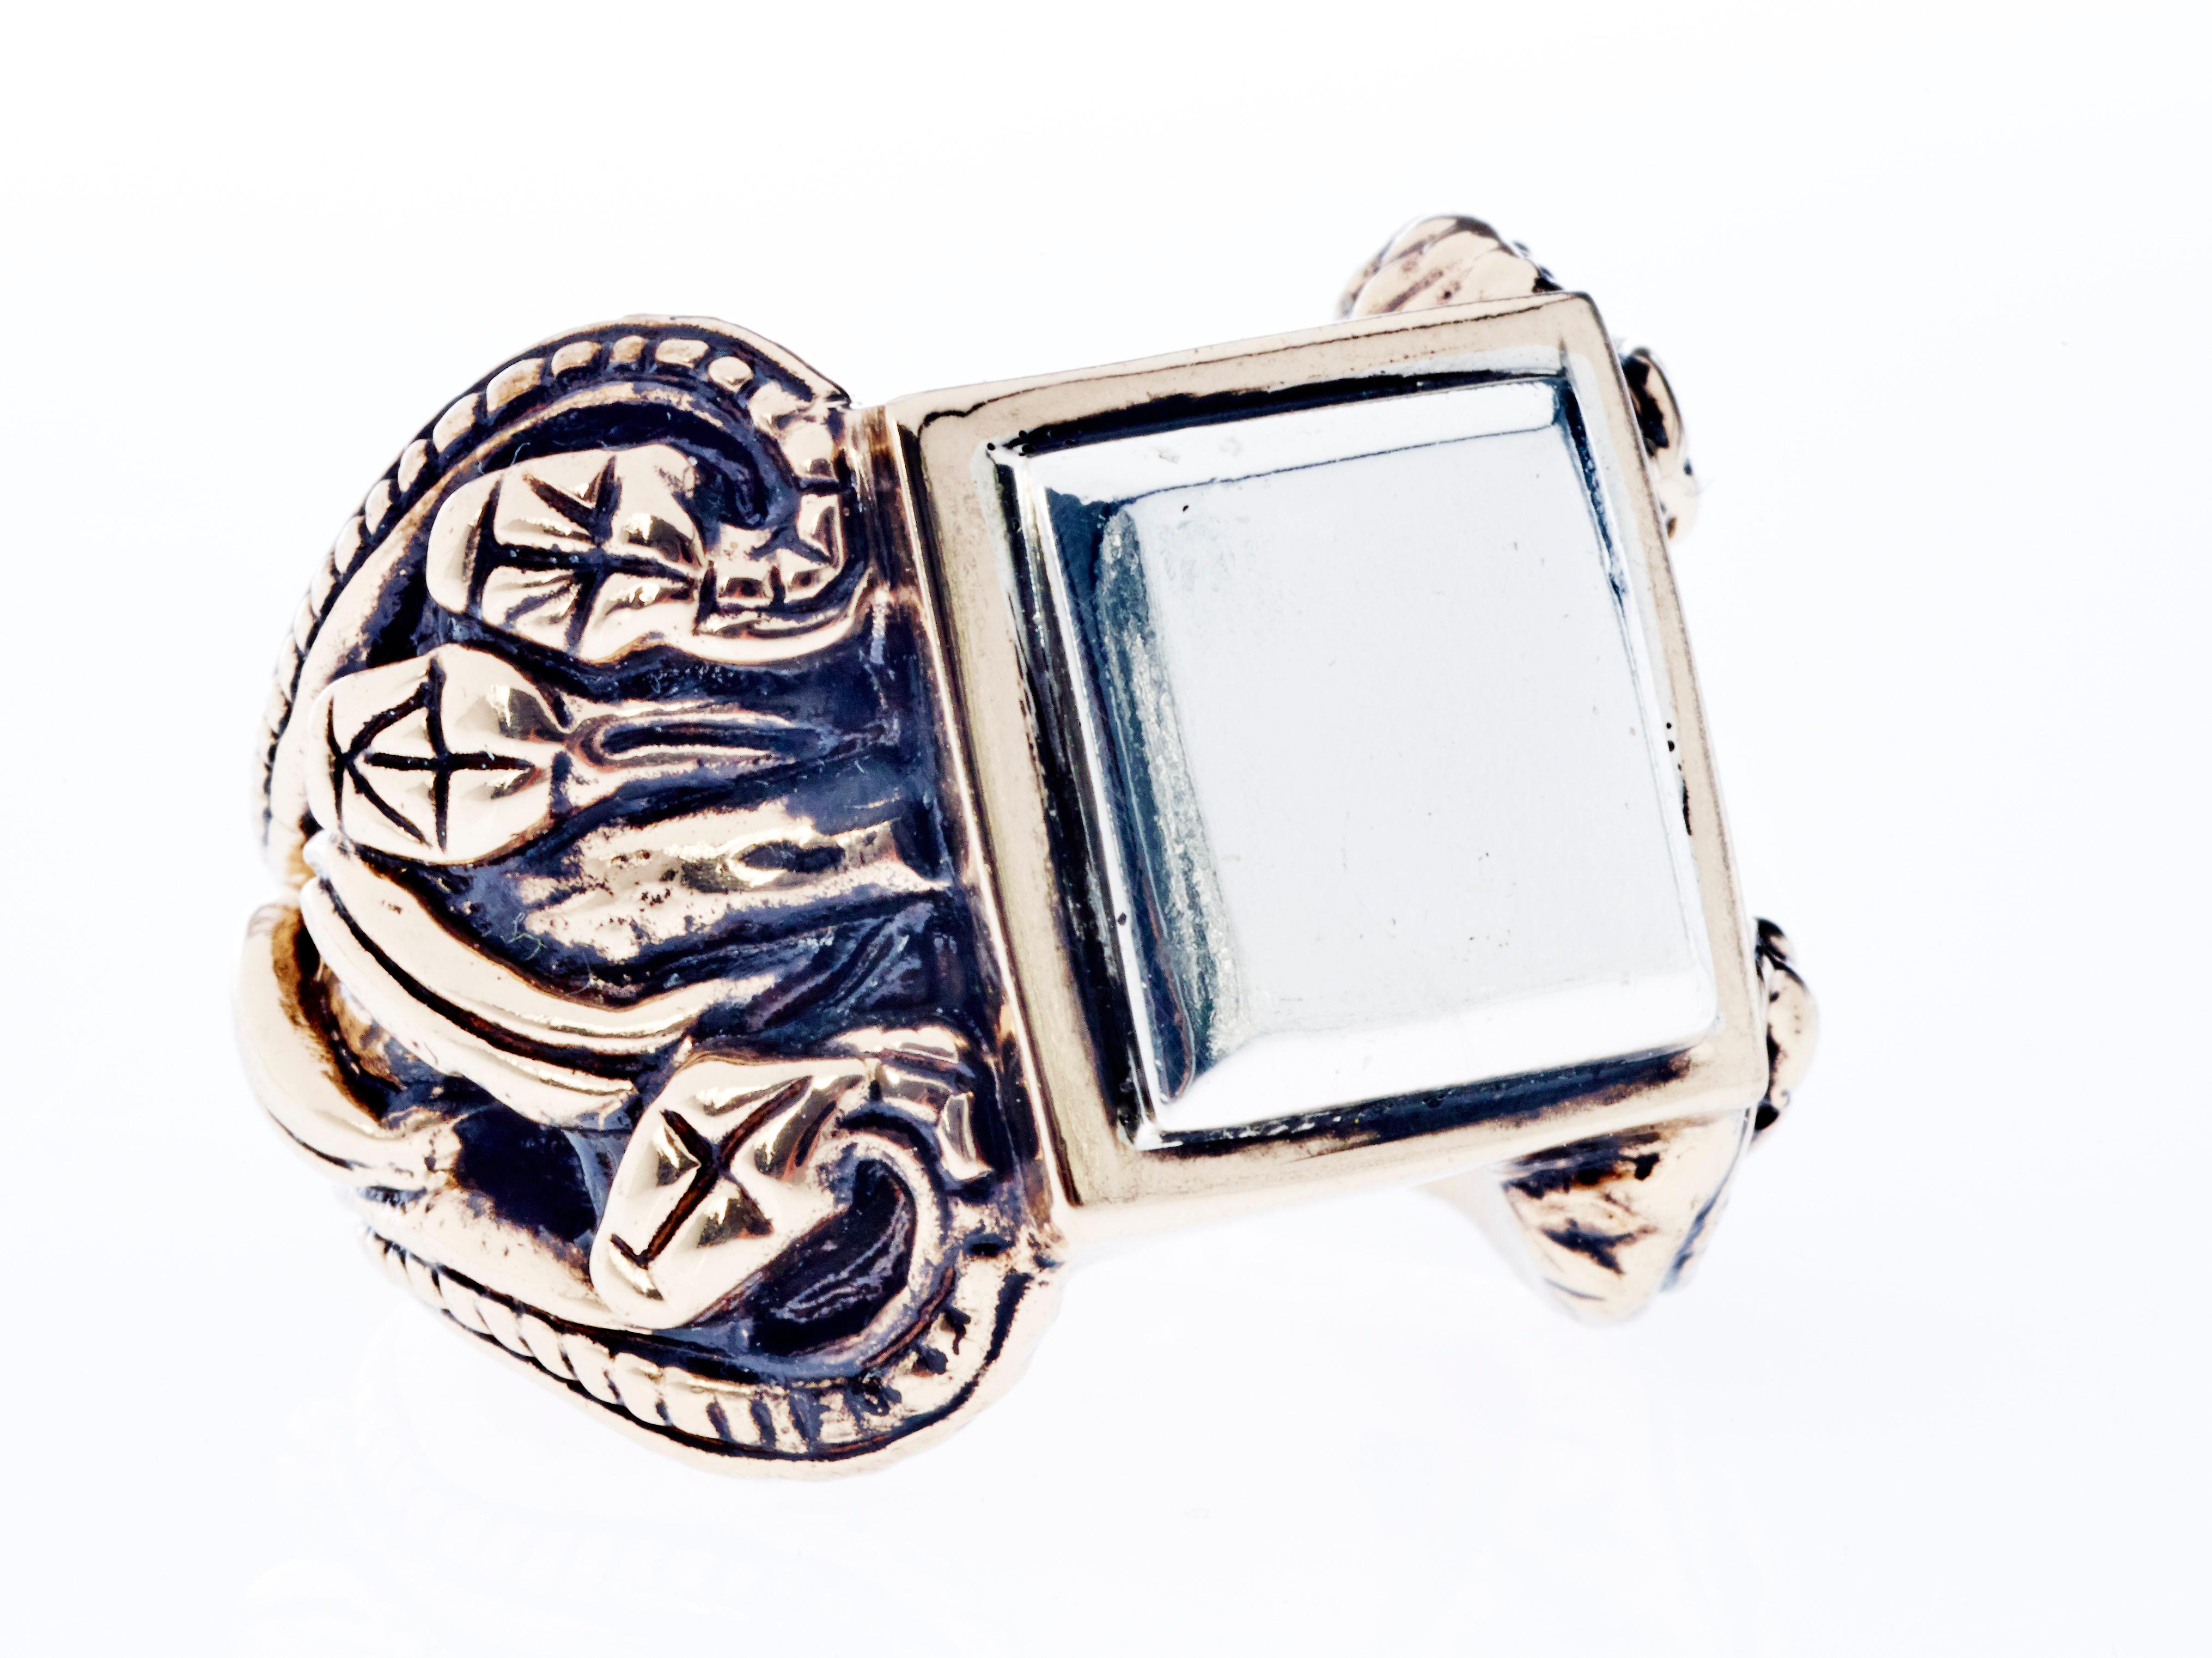 Crest Schlange Ring viktorianischen Stil Antik Silber Gold Vermeil J DAUPHIN

J DAUPHIN Statement-Ring aus Gold Vermeil und Silber mit Antikplattierung.

Die Schlange ist eines der ältesten und am weitesten verbreiteten mythologischen Symbole.